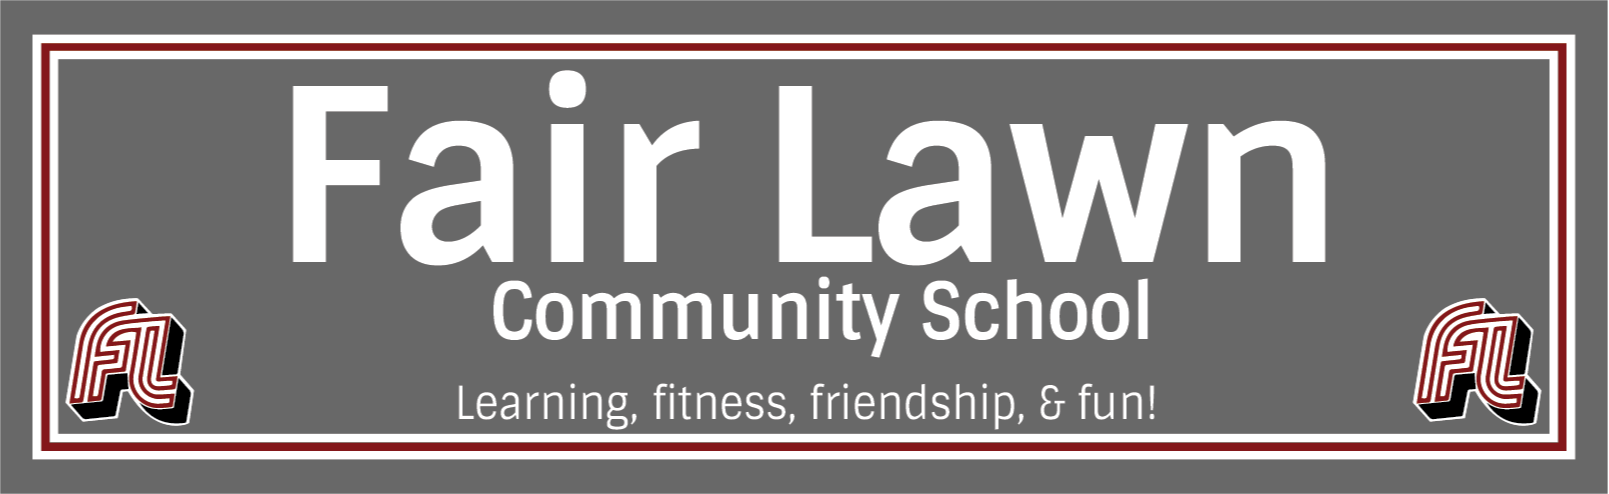 Community School Logo:  Fair Lawn Community School: Learning, Friendship, Fitness, and Fun!